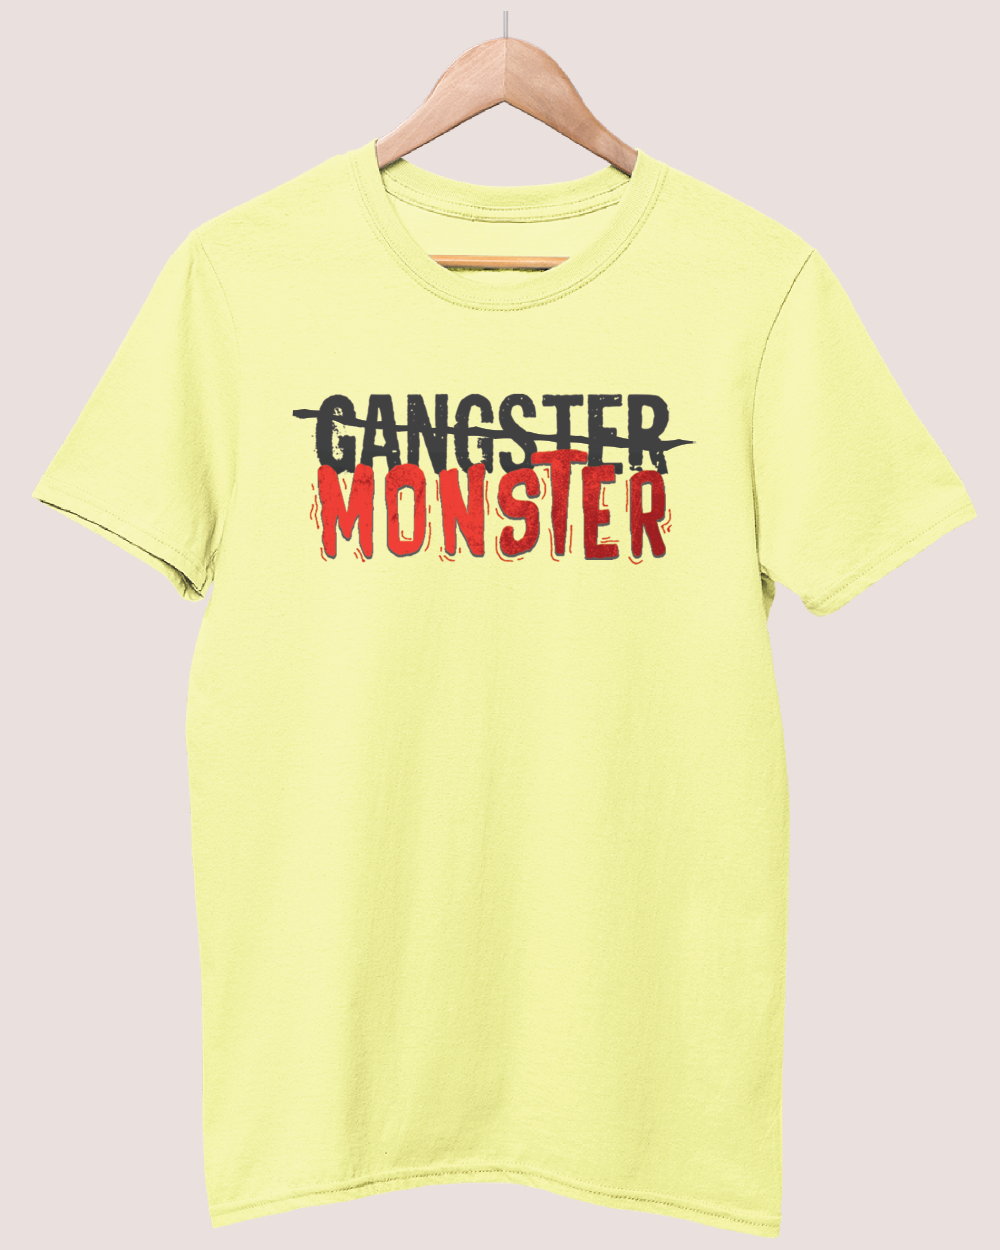 Monstre Johan Liebert  Kenzo Tenma Monster Anime shirt